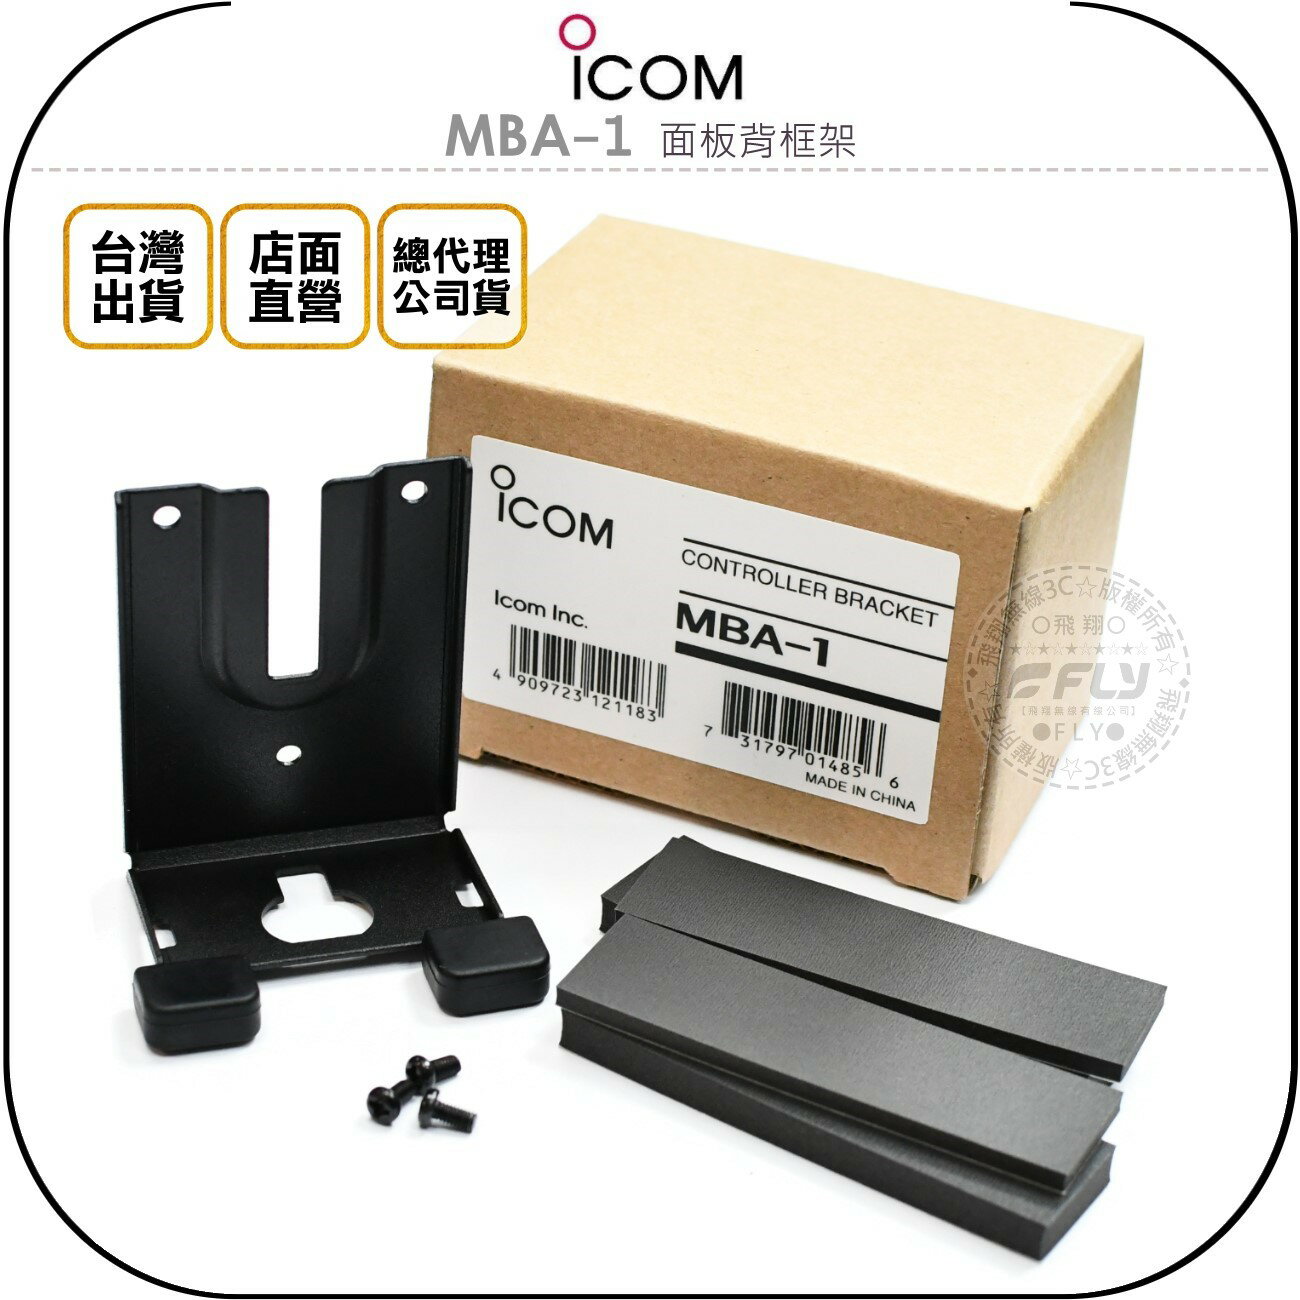 《飛翔無線3C》ICOM MBA-1 面板背框架￨原廠公司貨￨適用IC-7100 連接MBF-1 面板座